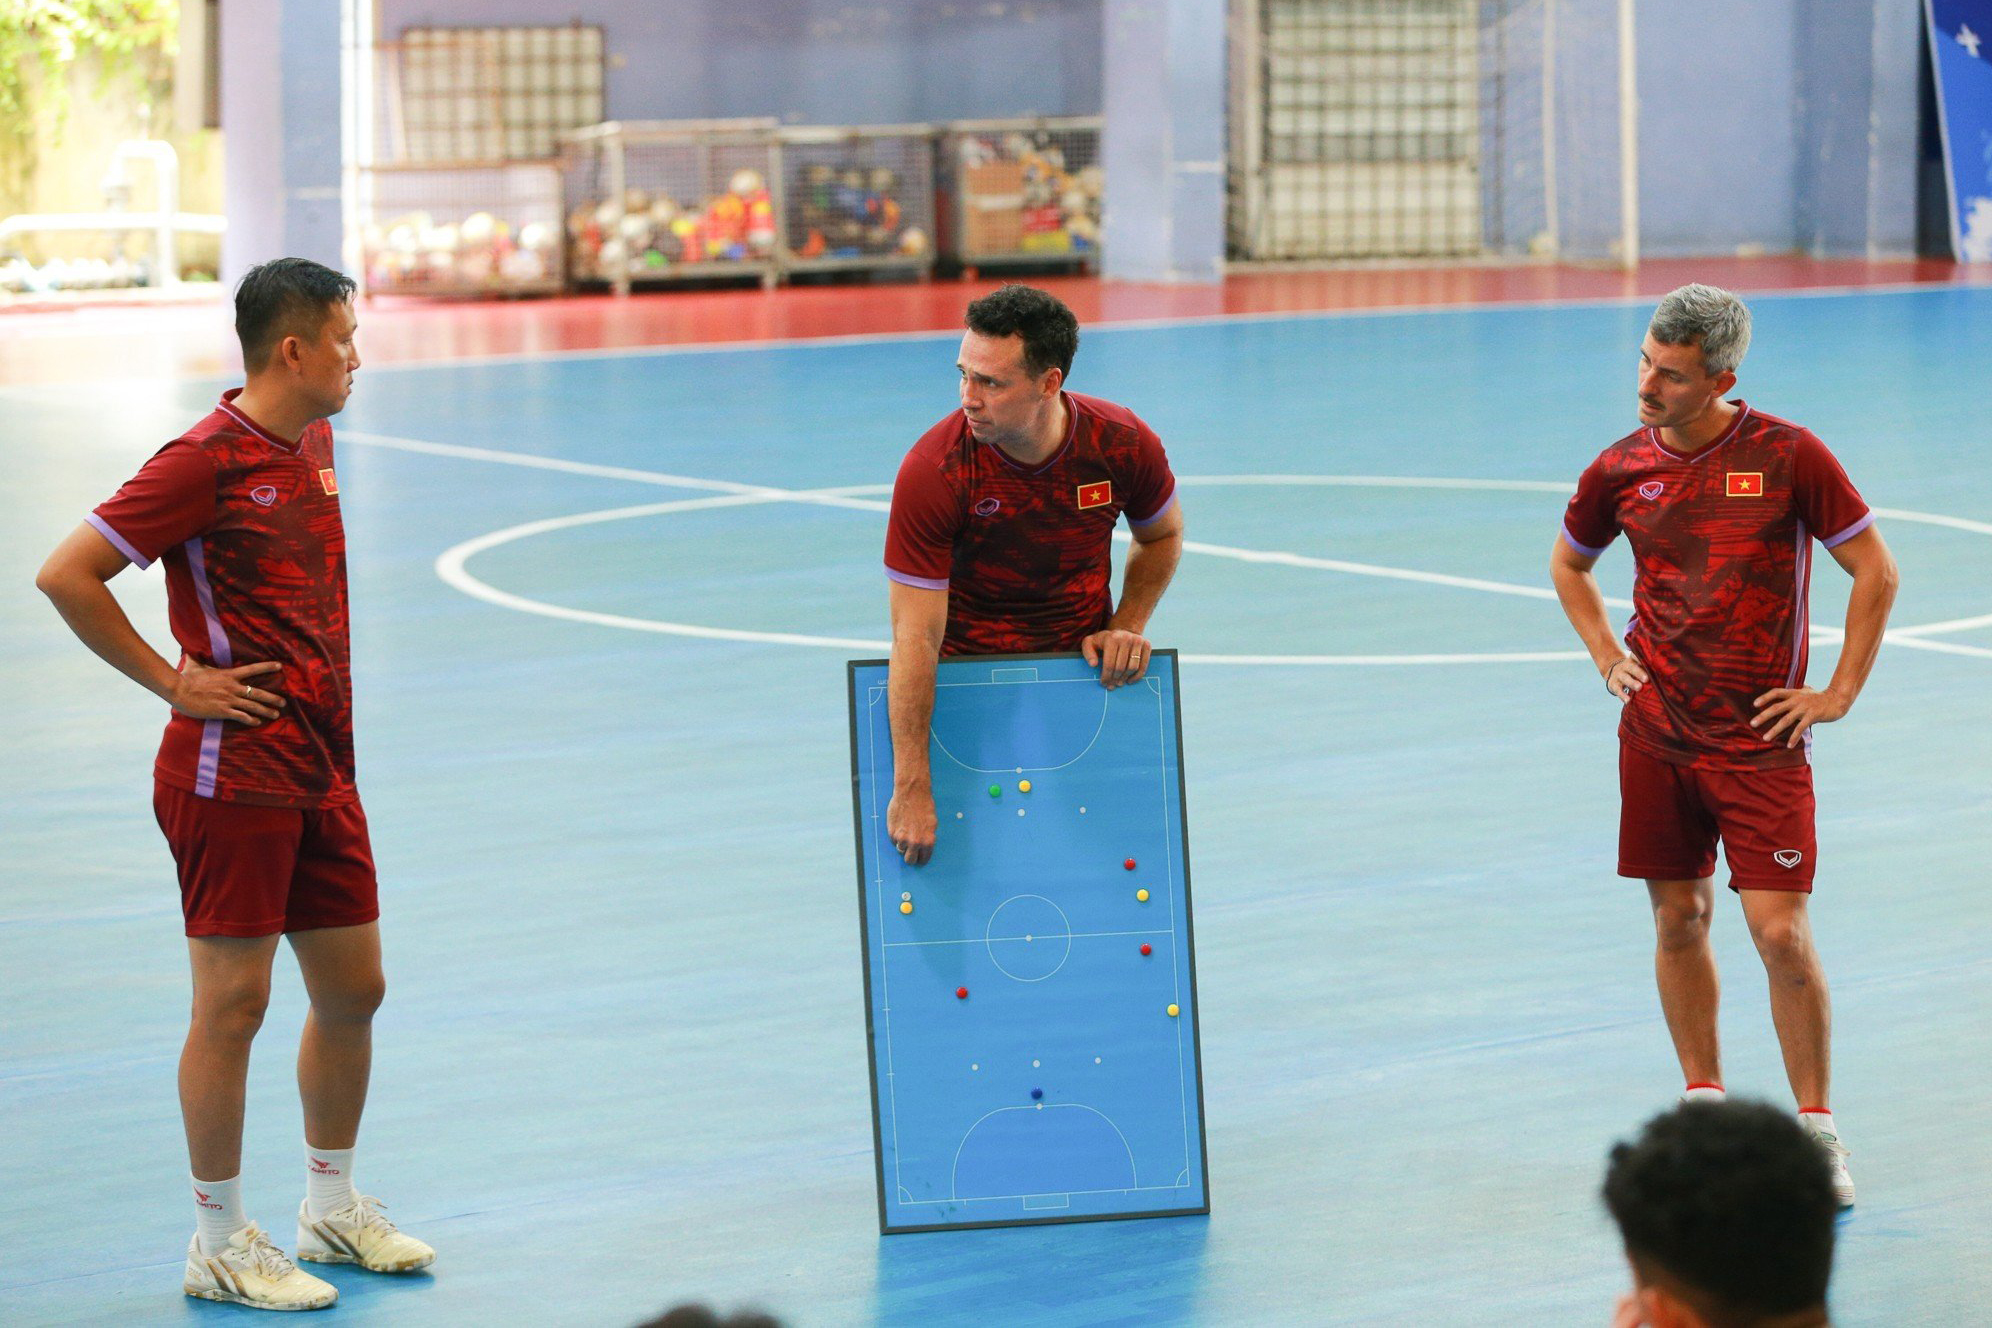 Tuyển futsal Việt Nam đang trong đợt tập trung chuẩn bị cho 2 trận giao hữu với đội tuyển Nga và Hungary. Đây cũng là đợt trung hướng đến vòng loại giải futsal châu Á 2024.